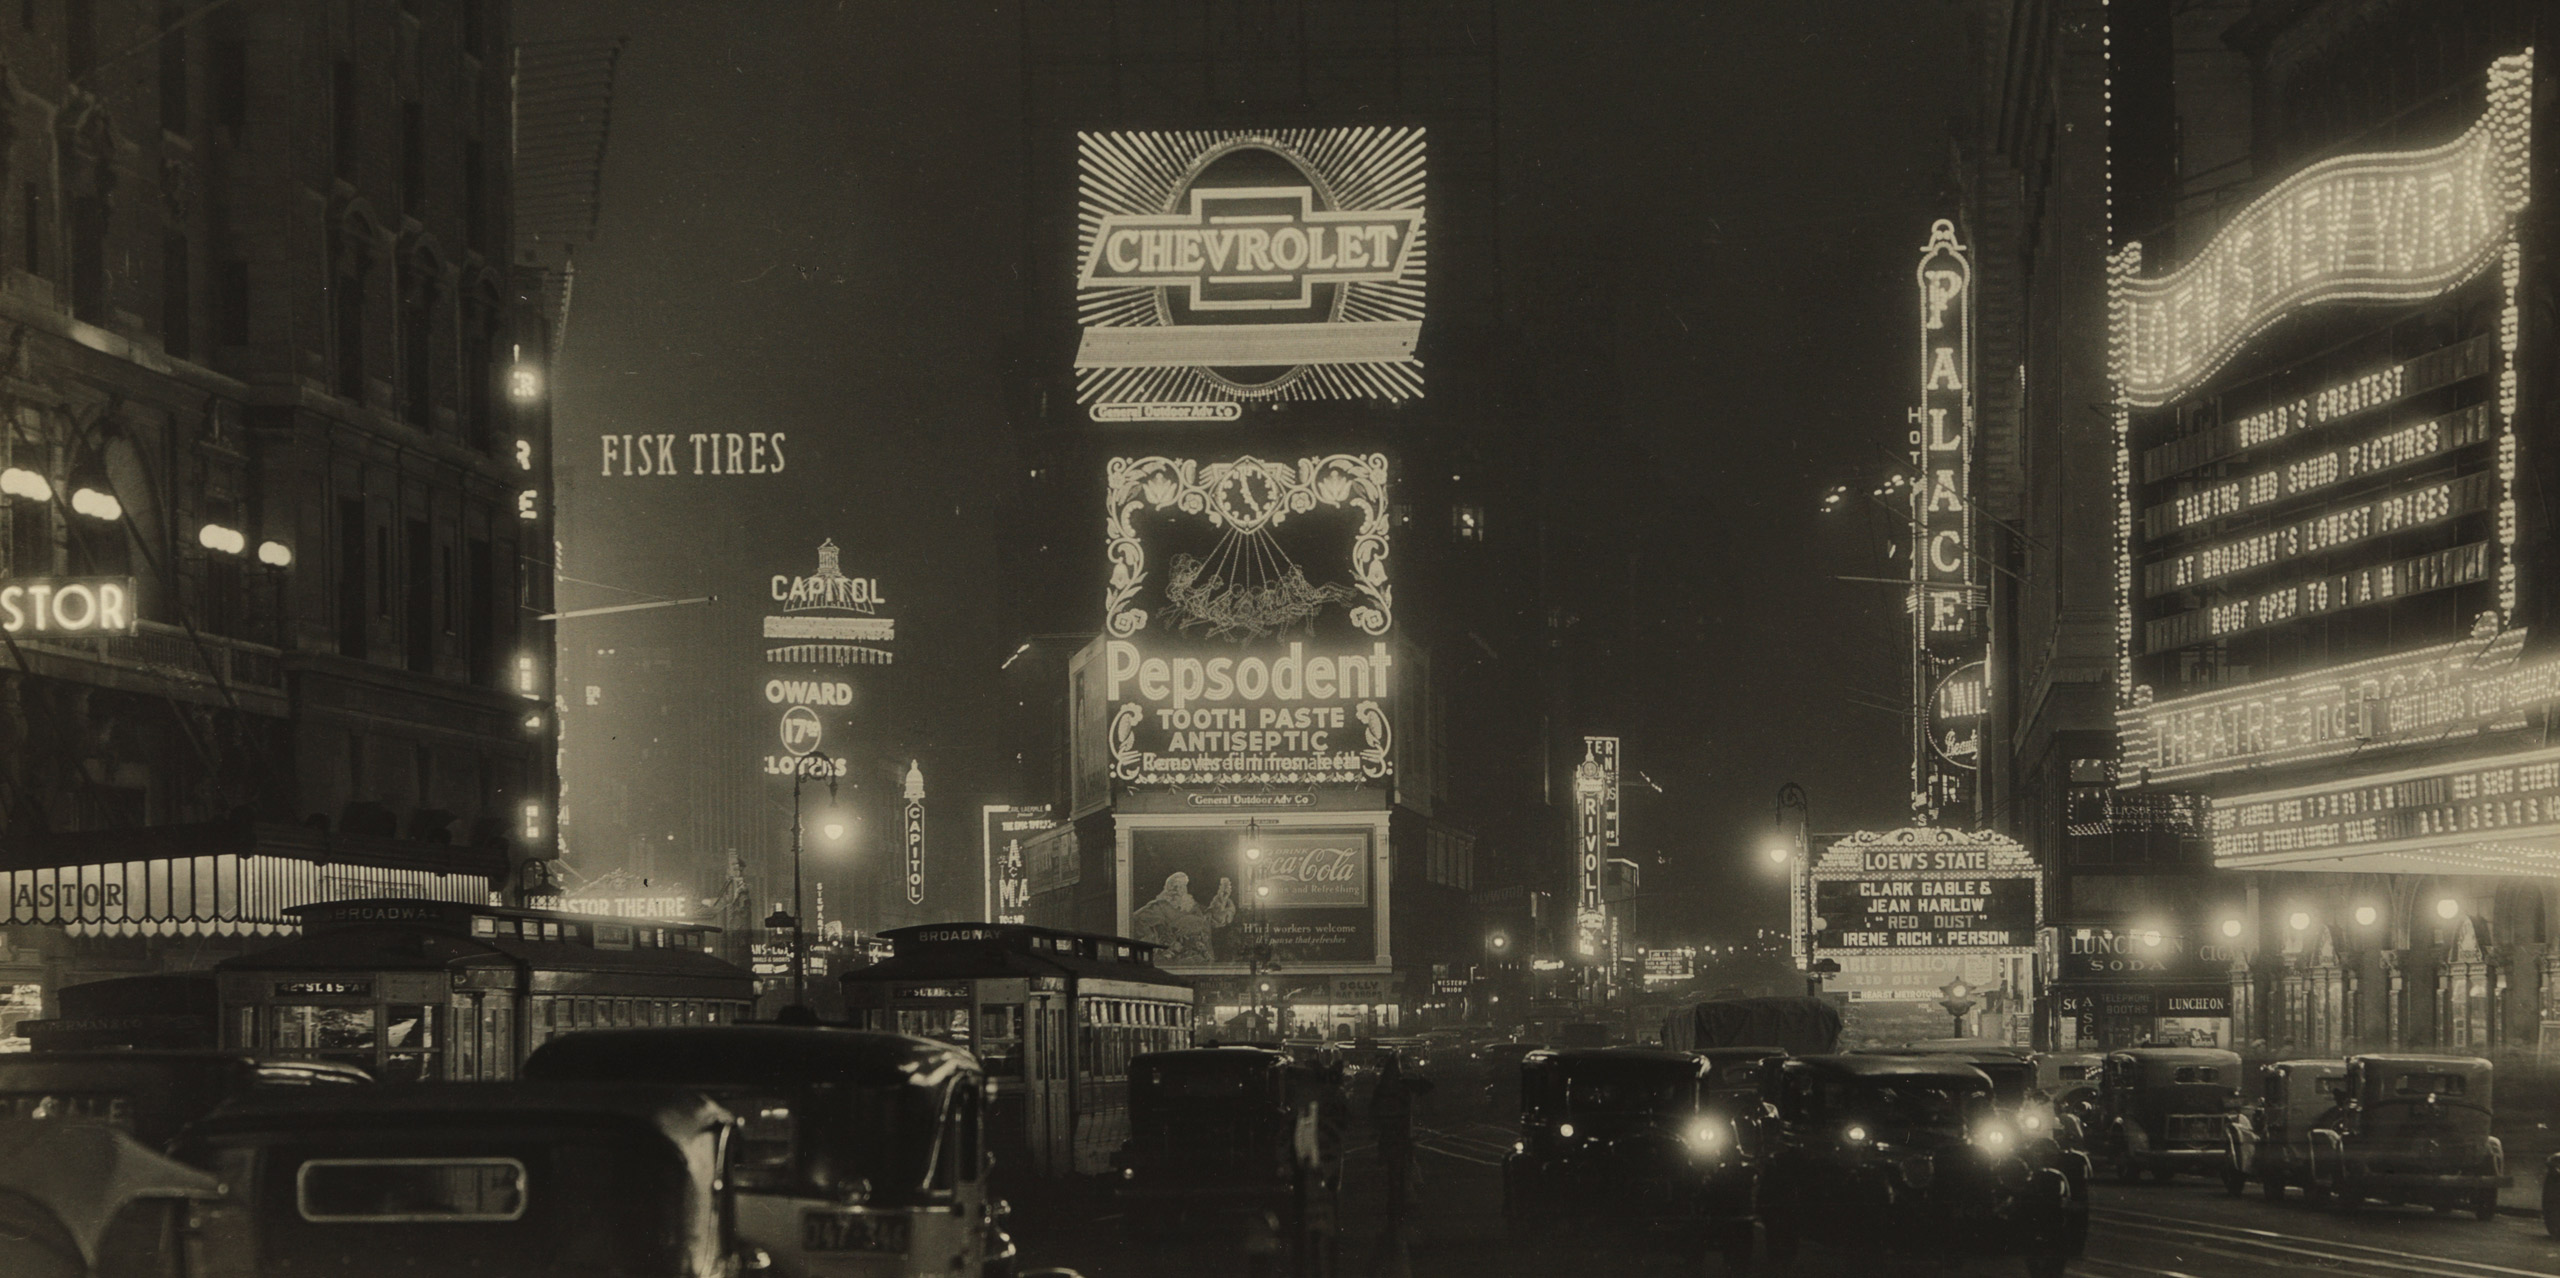 ニューヨークの建築と都市計画 写真資料集 New York 1900